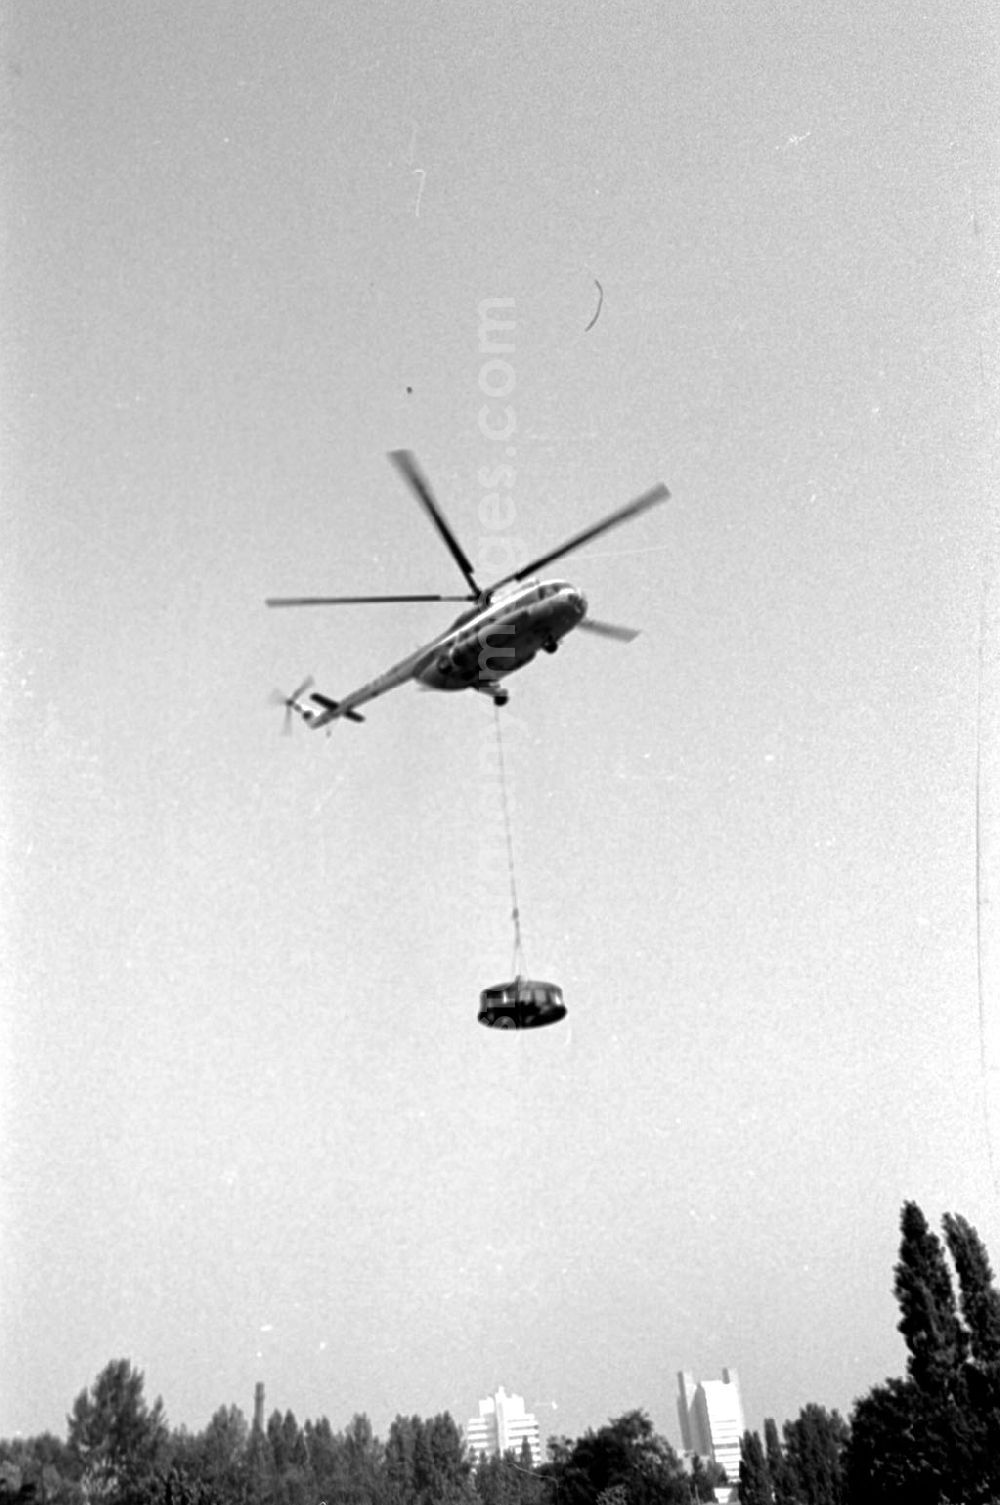 GDR photo archive: Berlin-Mitte - Hubschraubereinsatz Mi 8 der Interflug für Charite vom Stadion der Weltjugend 10.